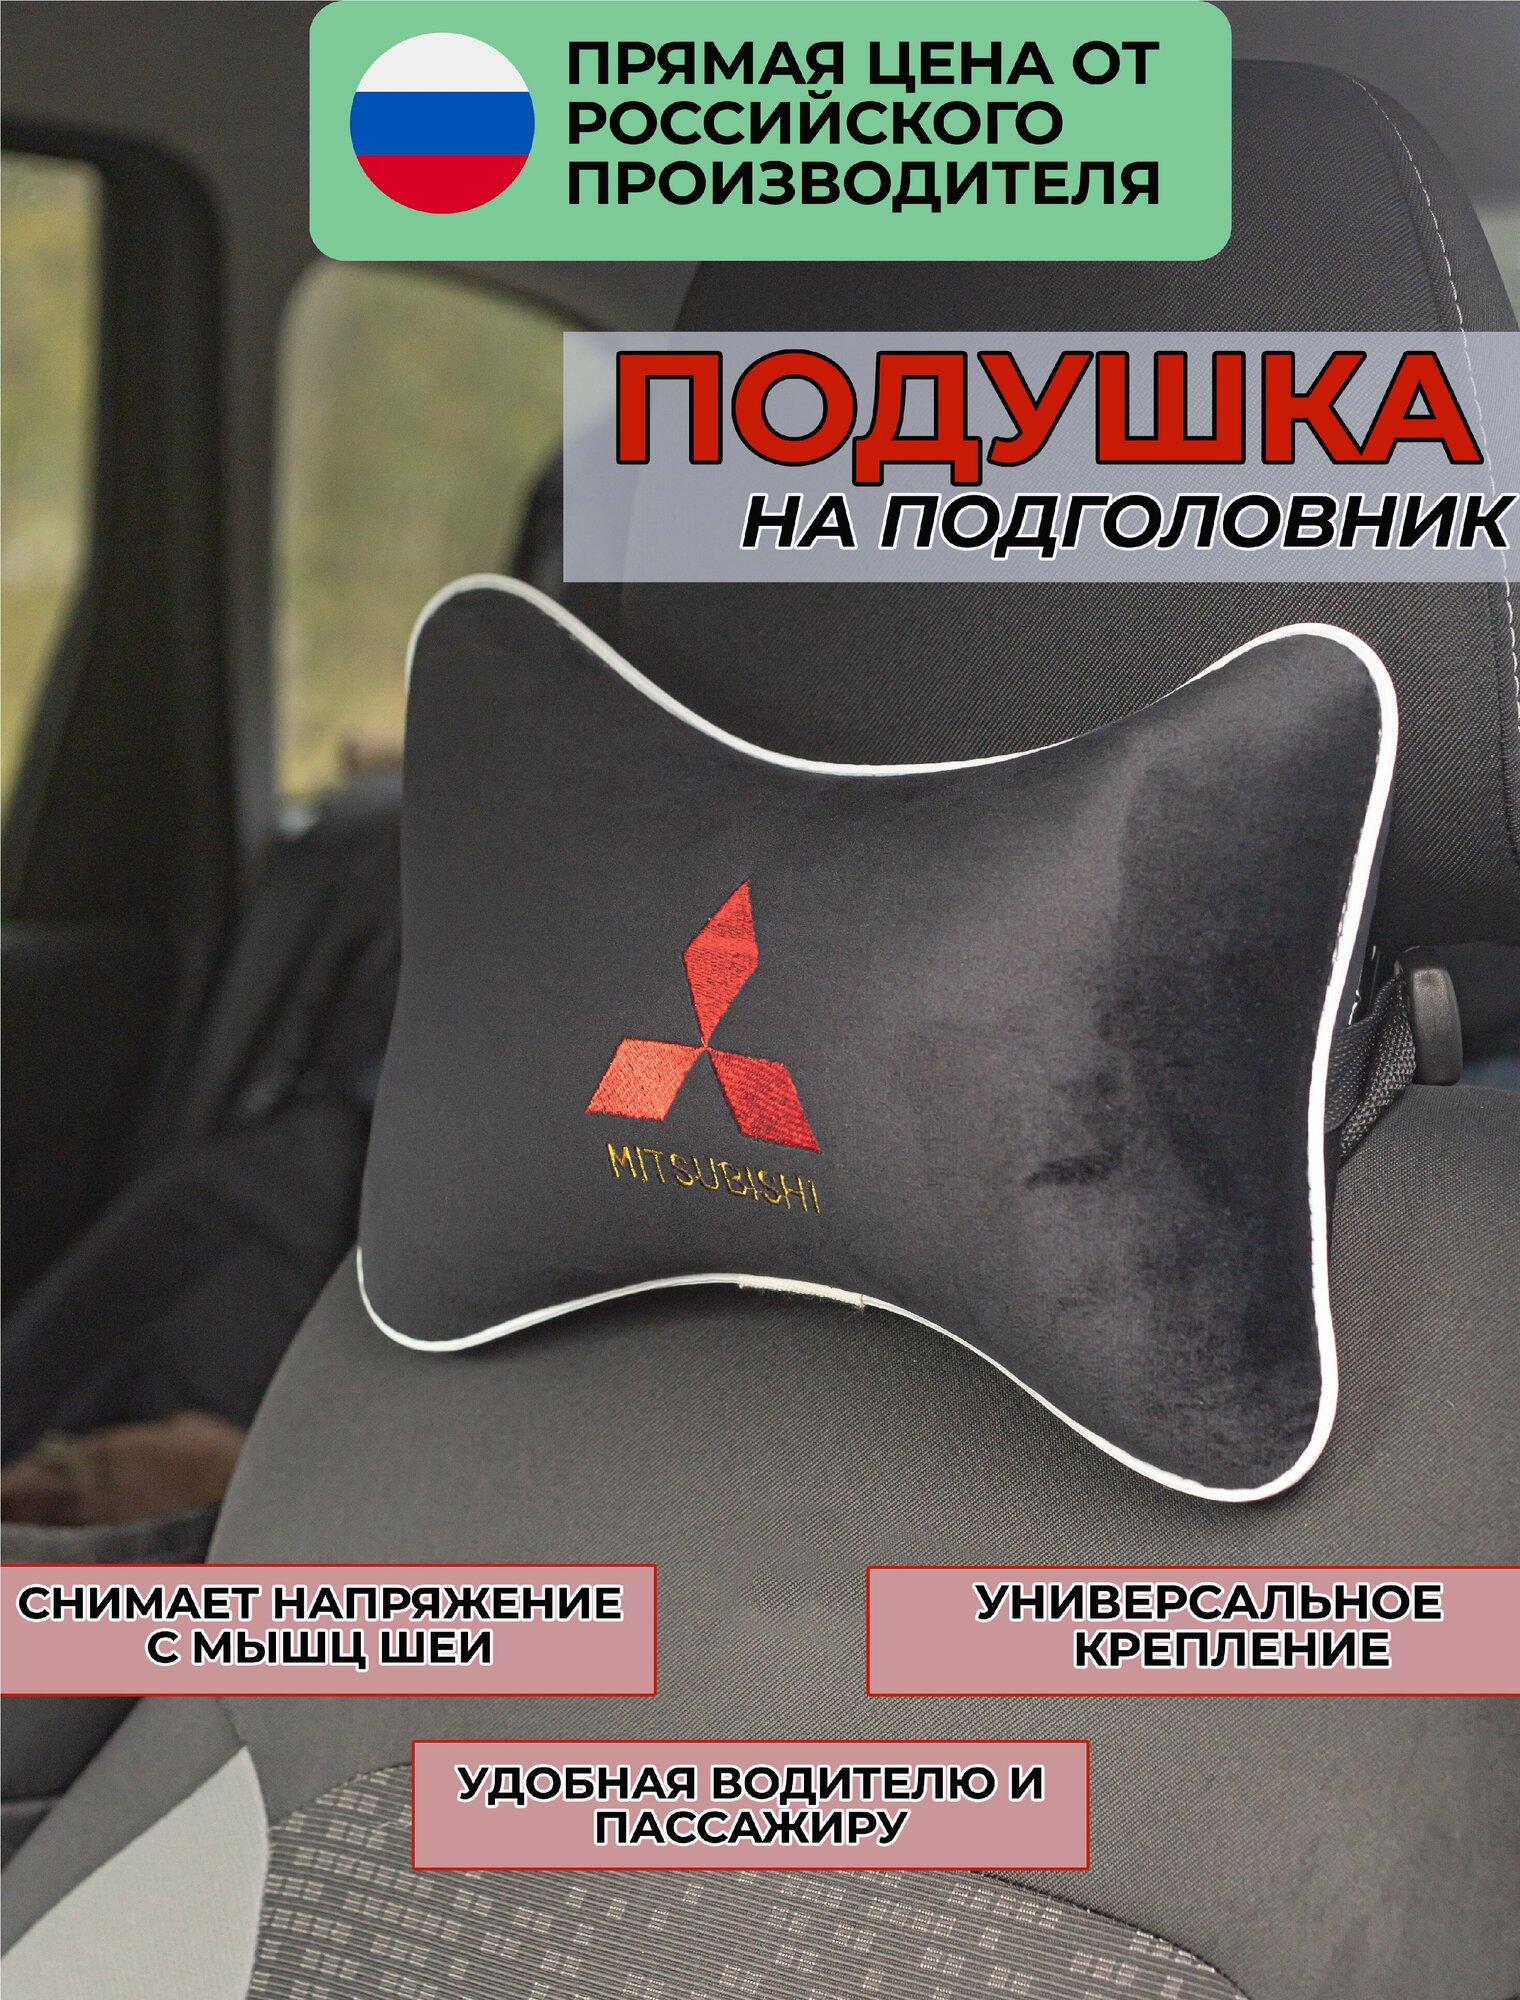 Подушка на подголовник в салон автомобиля из велюра с логотипом ((митсубиси) "Mitsubishi" для путешествий черная 37426